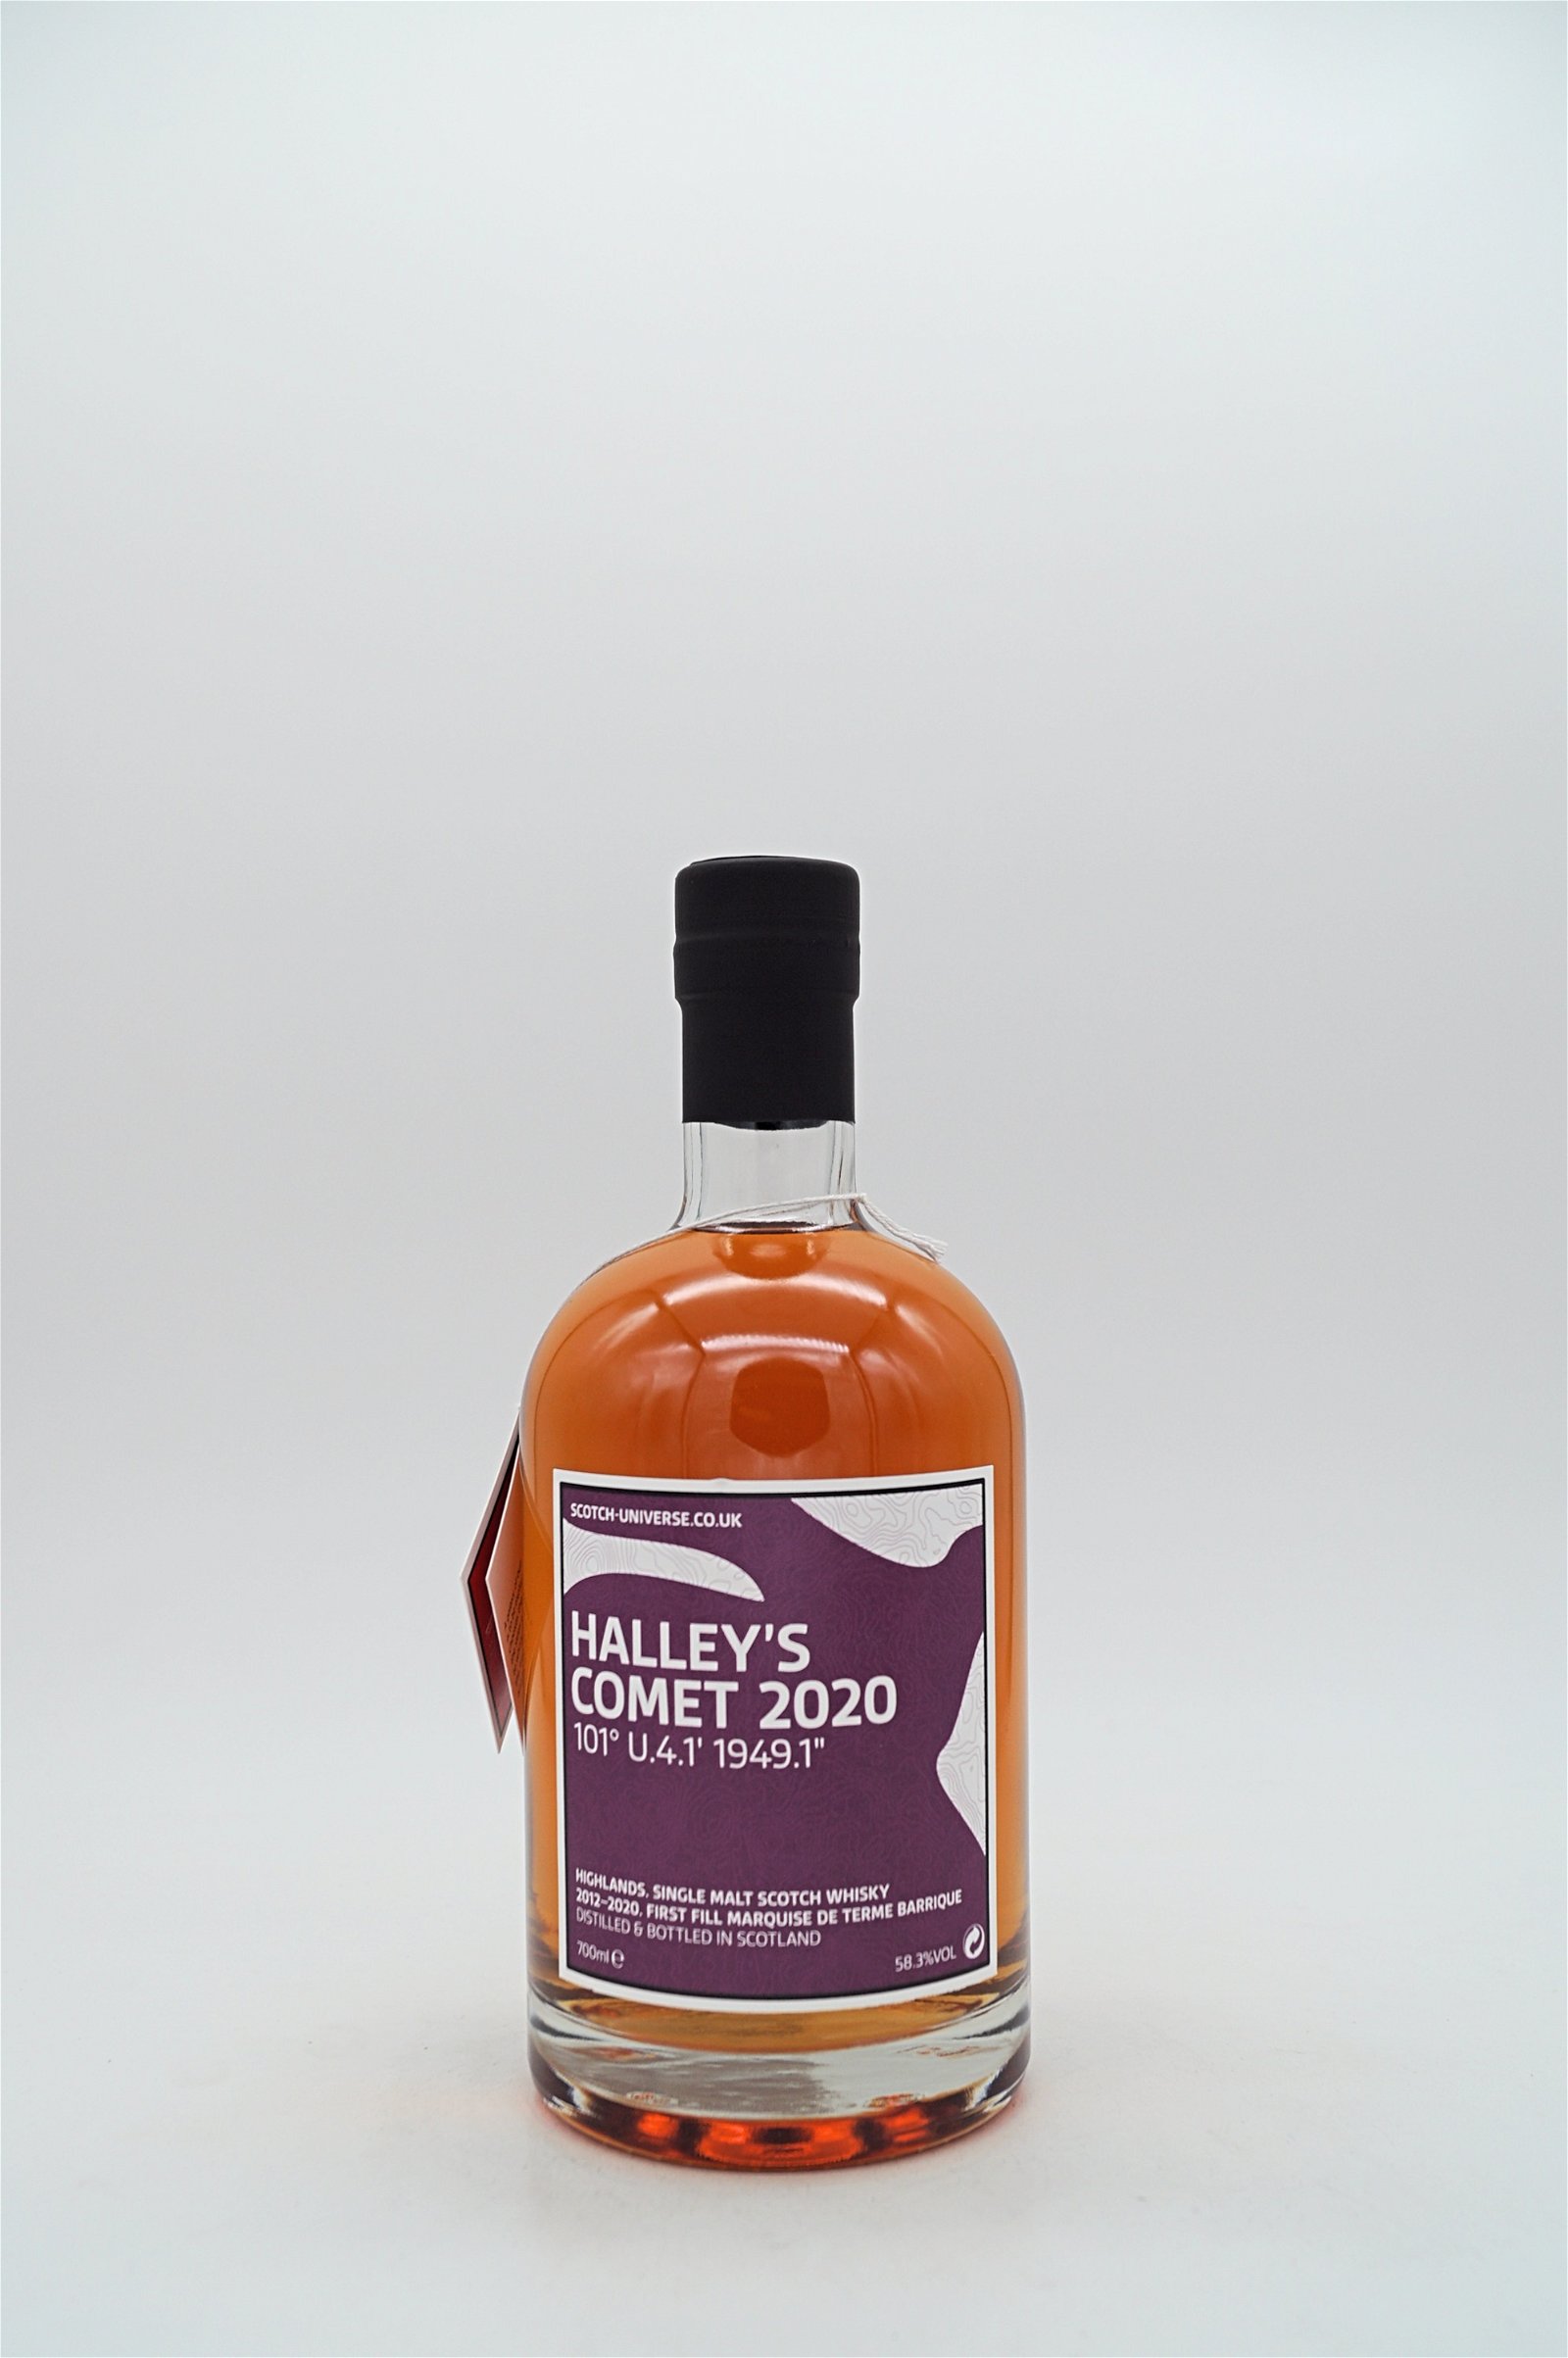 Scotch Universe Halleys Comet 2020 Marquise de Terme Barrique 2012/2020 Highland Single Malt Scotch Whisky